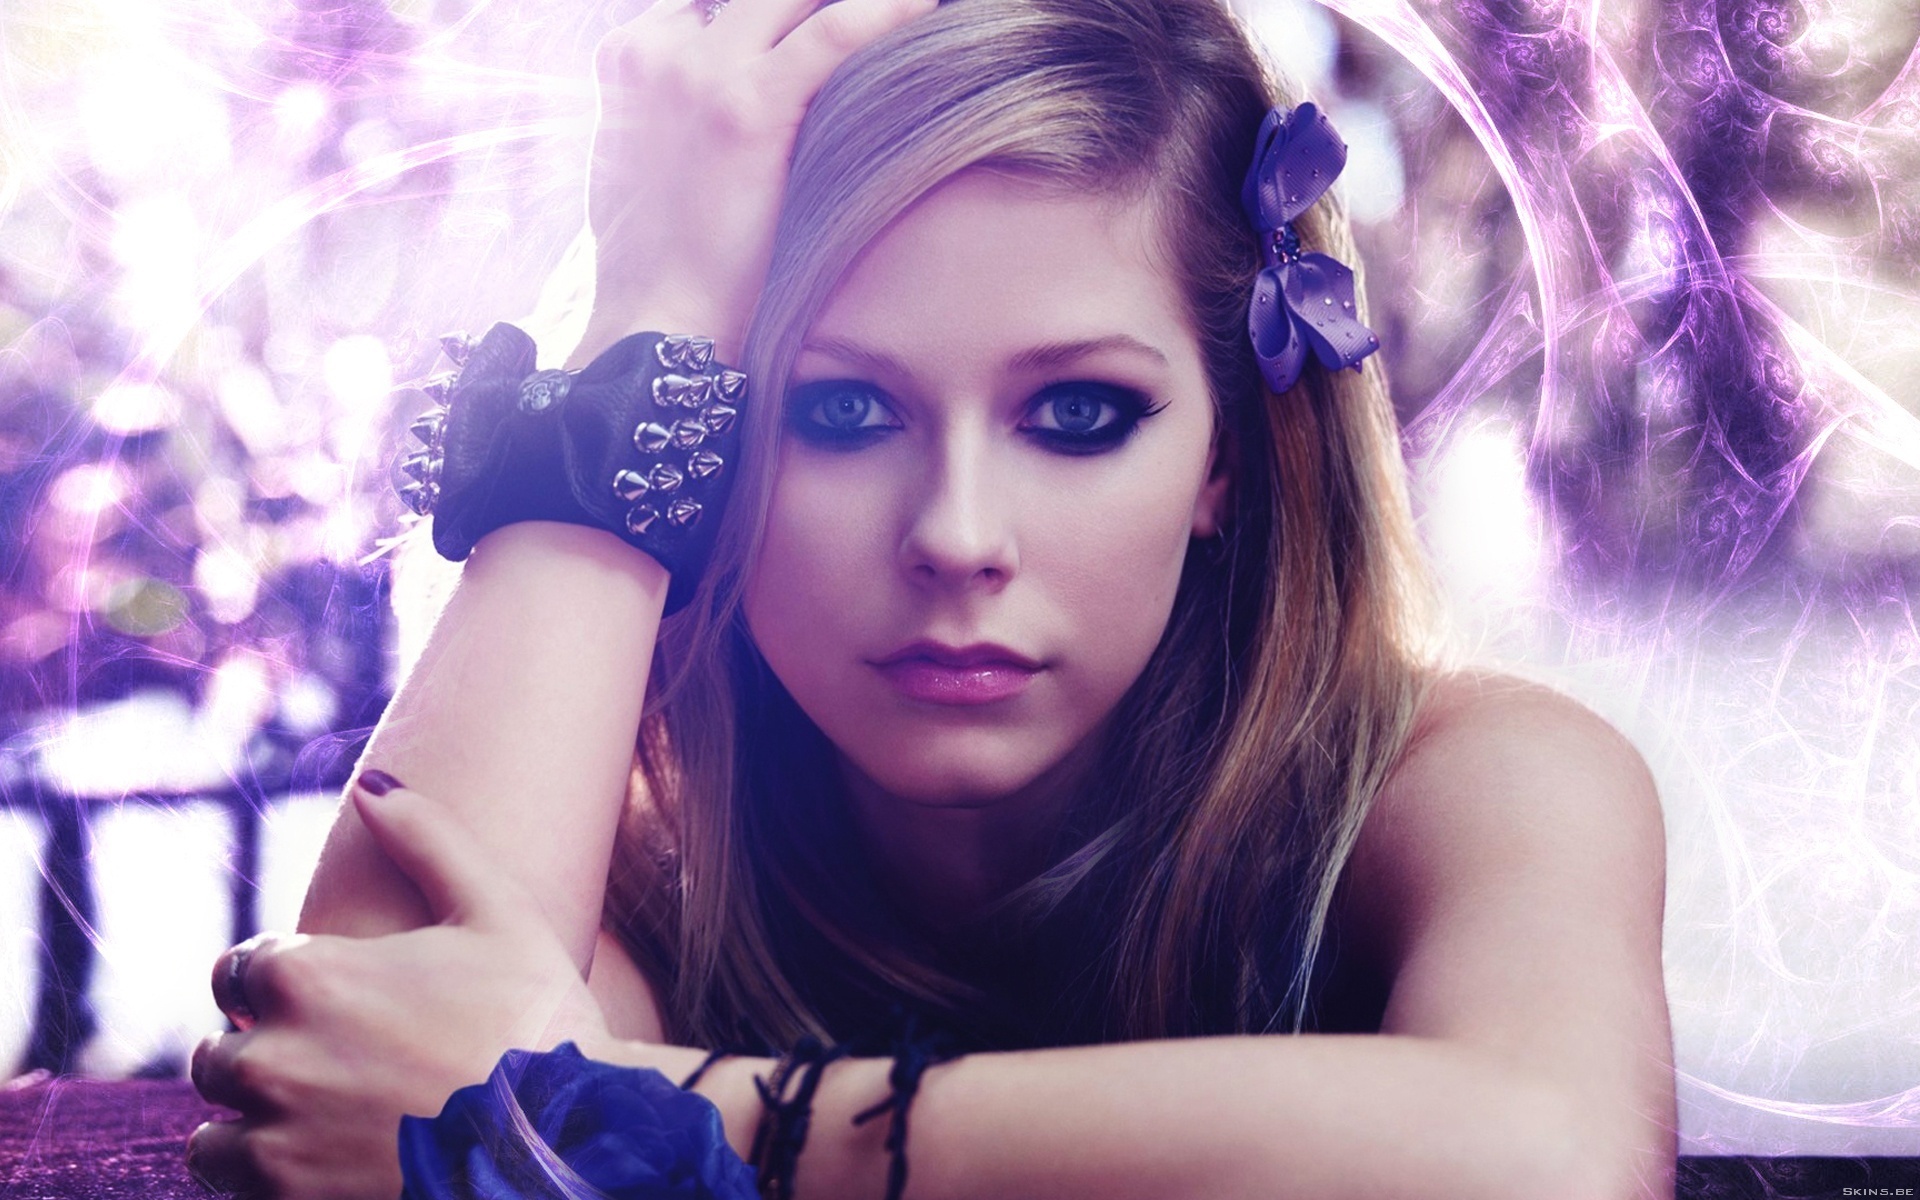 Melhores papéis de parede de Avril Lavigne para tela do telefone